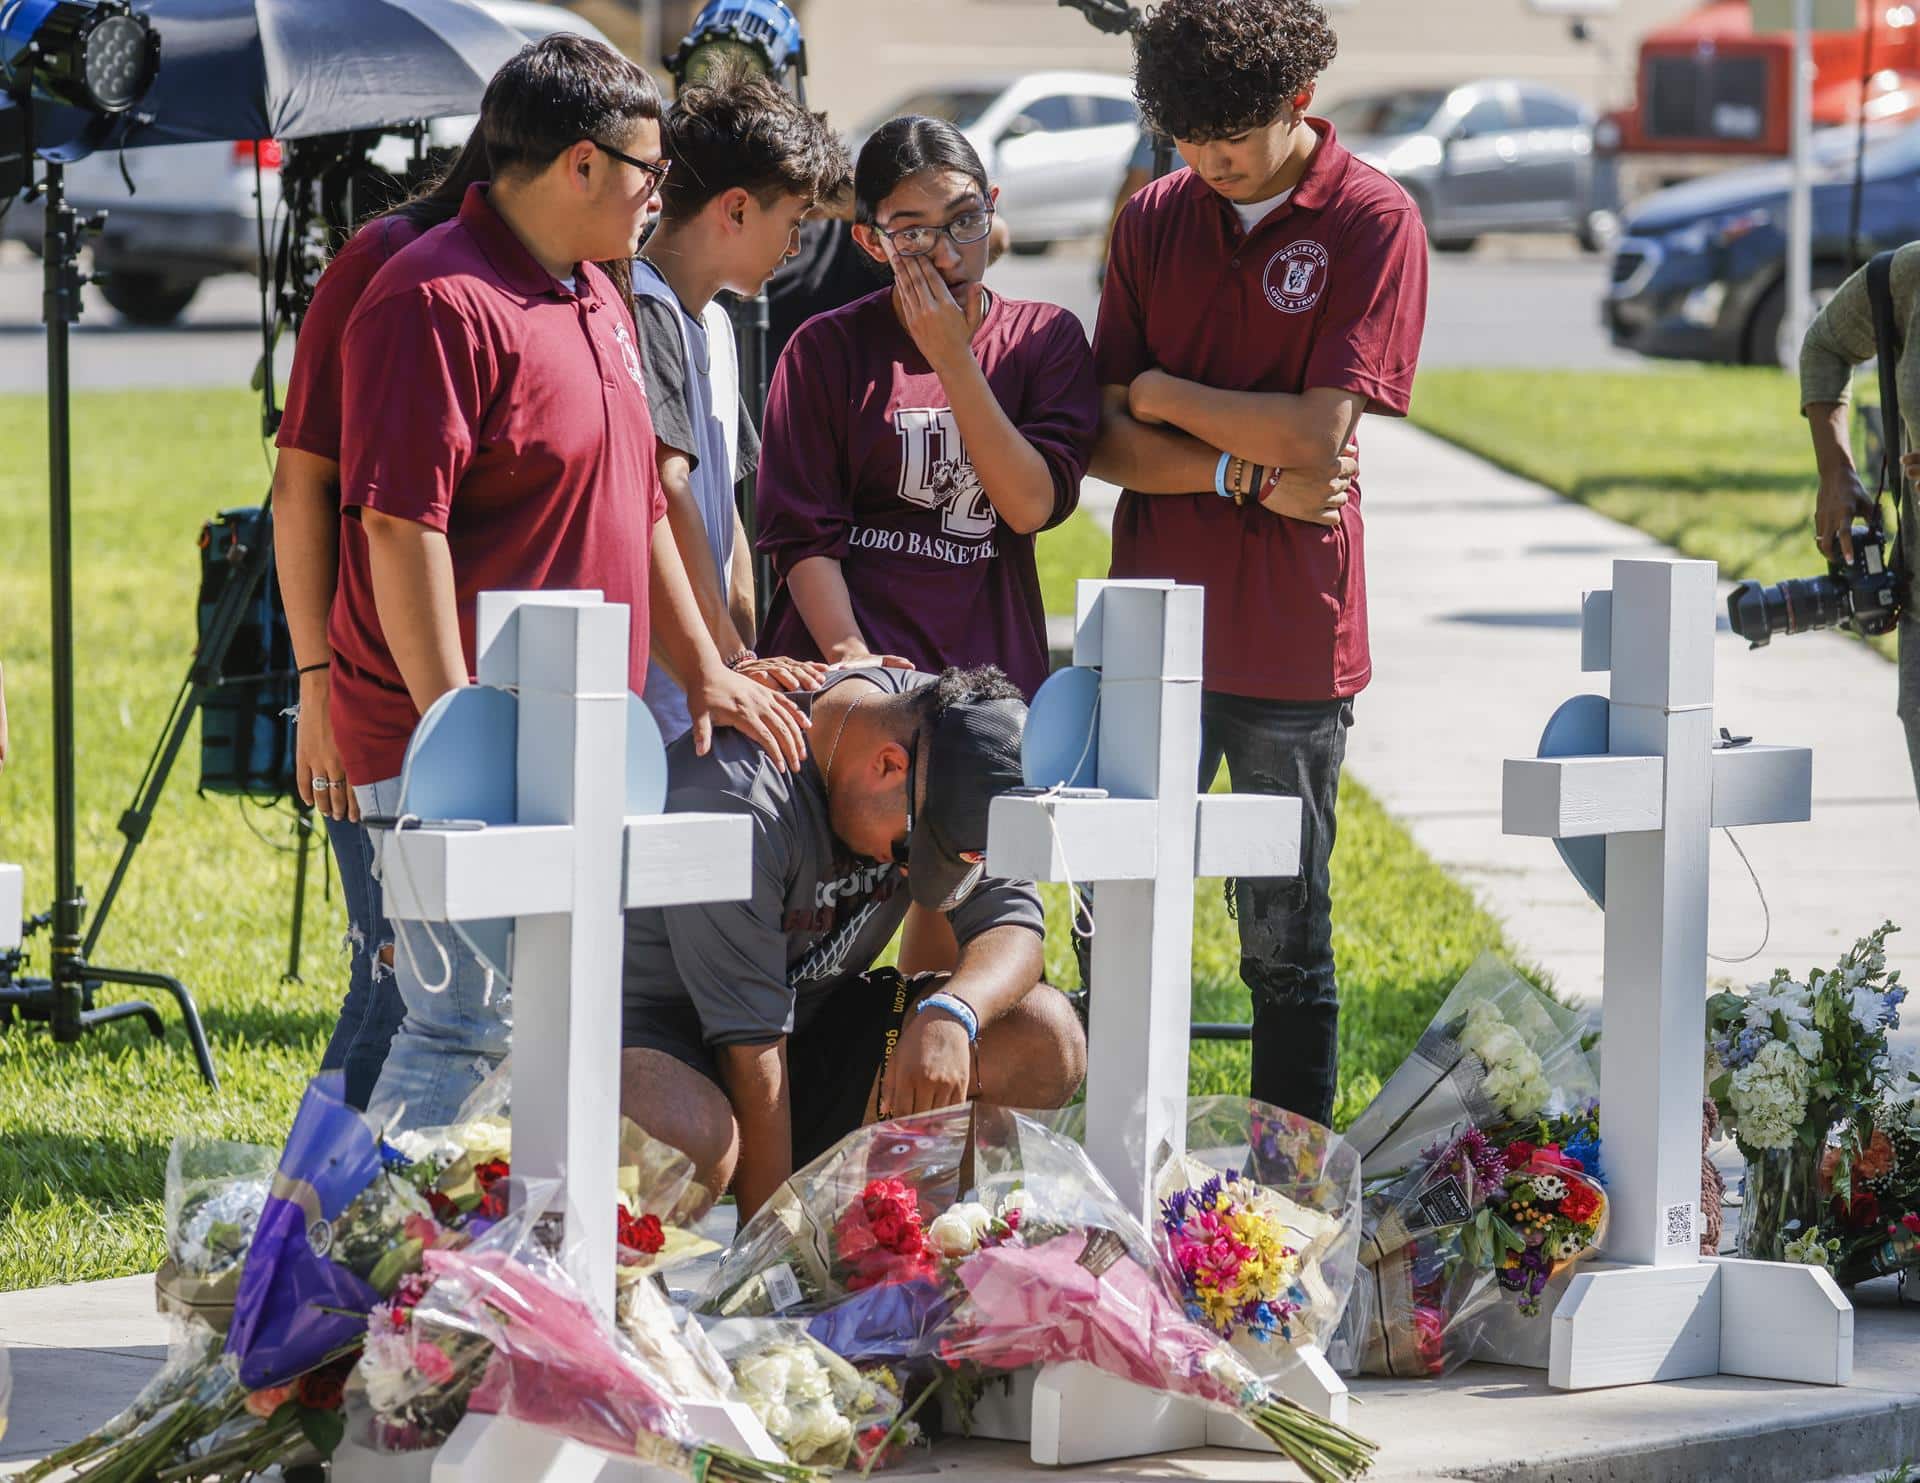 Flores y recuerdos frente al colegio en el que se perpetró la masacre de Uvalde (Texas).